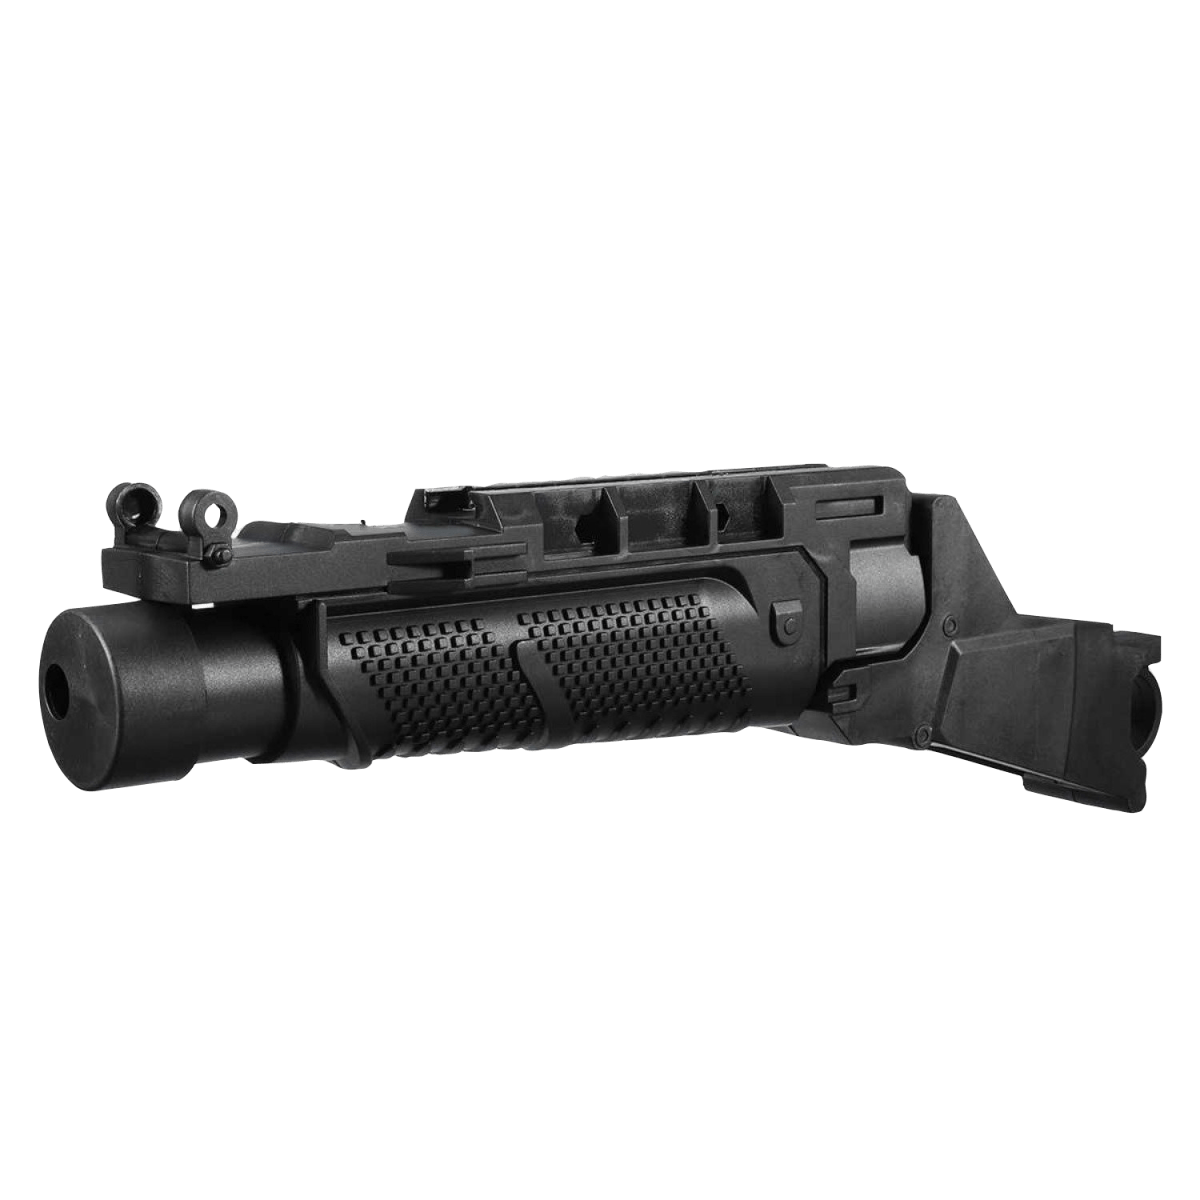 EGLM Replikat-Granatwerfer/Geschwindigkeitslader